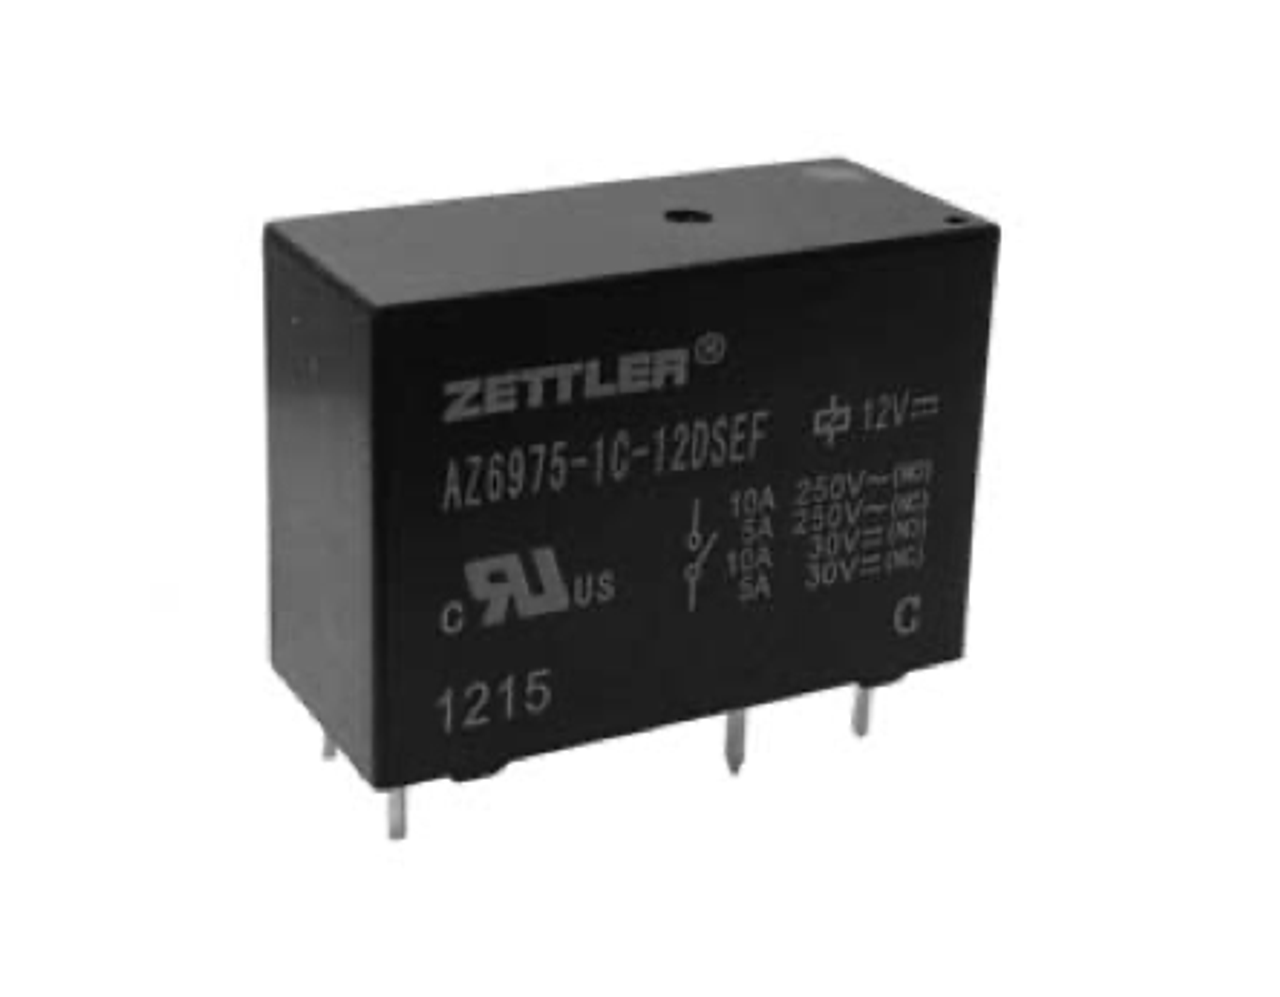 American Zettler AZ6975-1A-9DS Power Relay